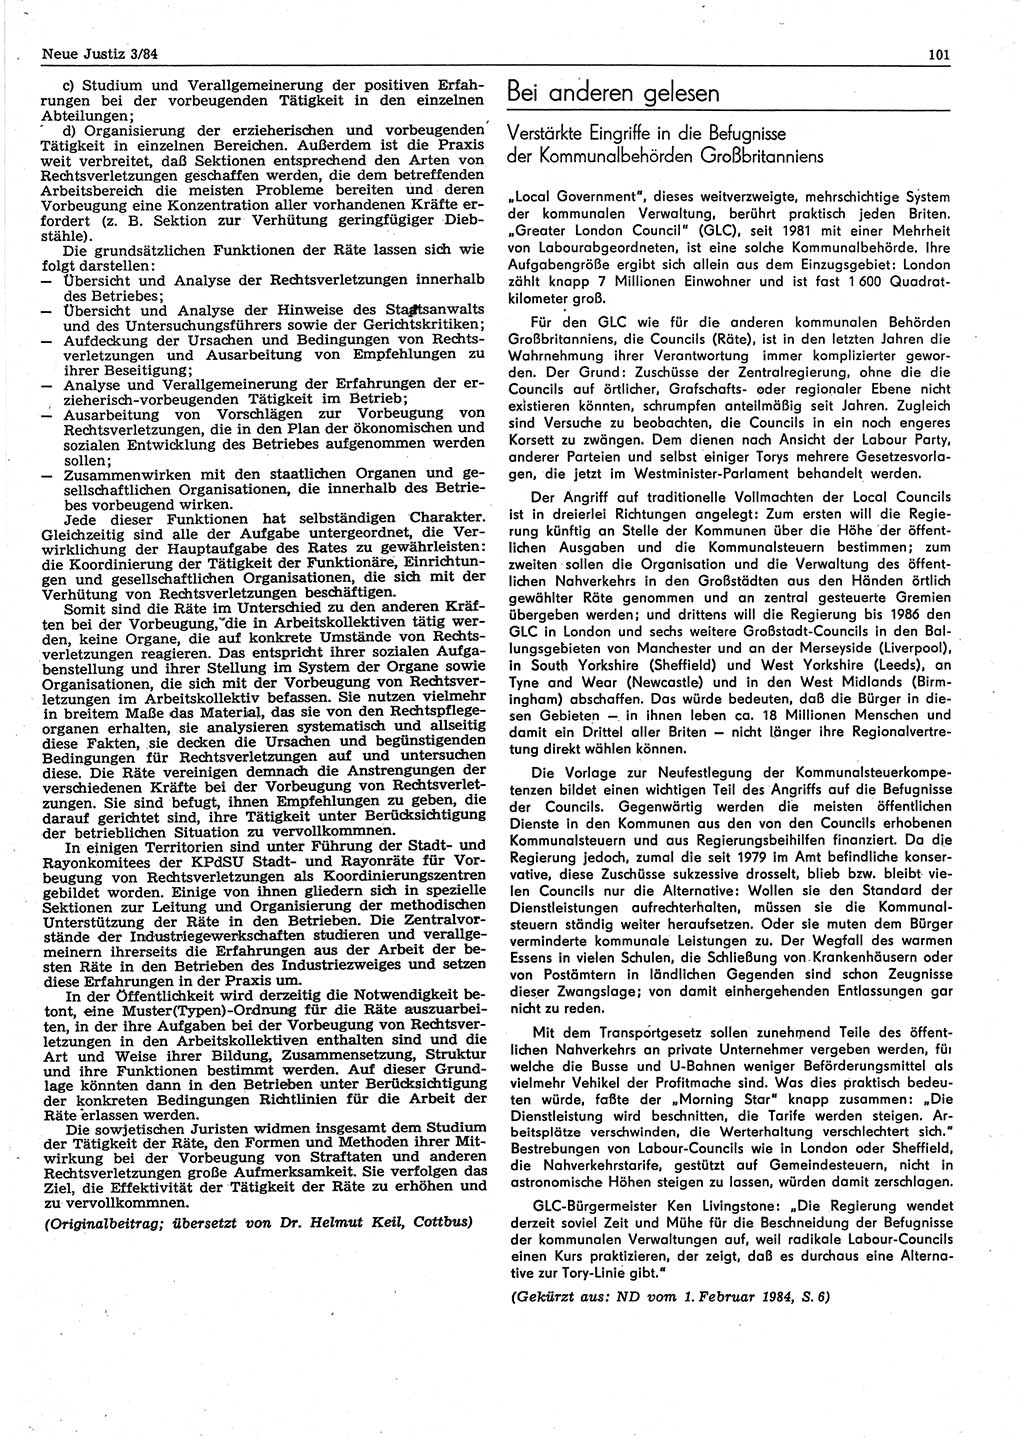 Neue Justiz (NJ), Zeitschrift für sozialistisches Recht und Gesetzlichkeit [Deutsche Demokratische Republik (DDR)], 38. Jahrgang 1984, Seite 101 (NJ DDR 1984, S. 101)